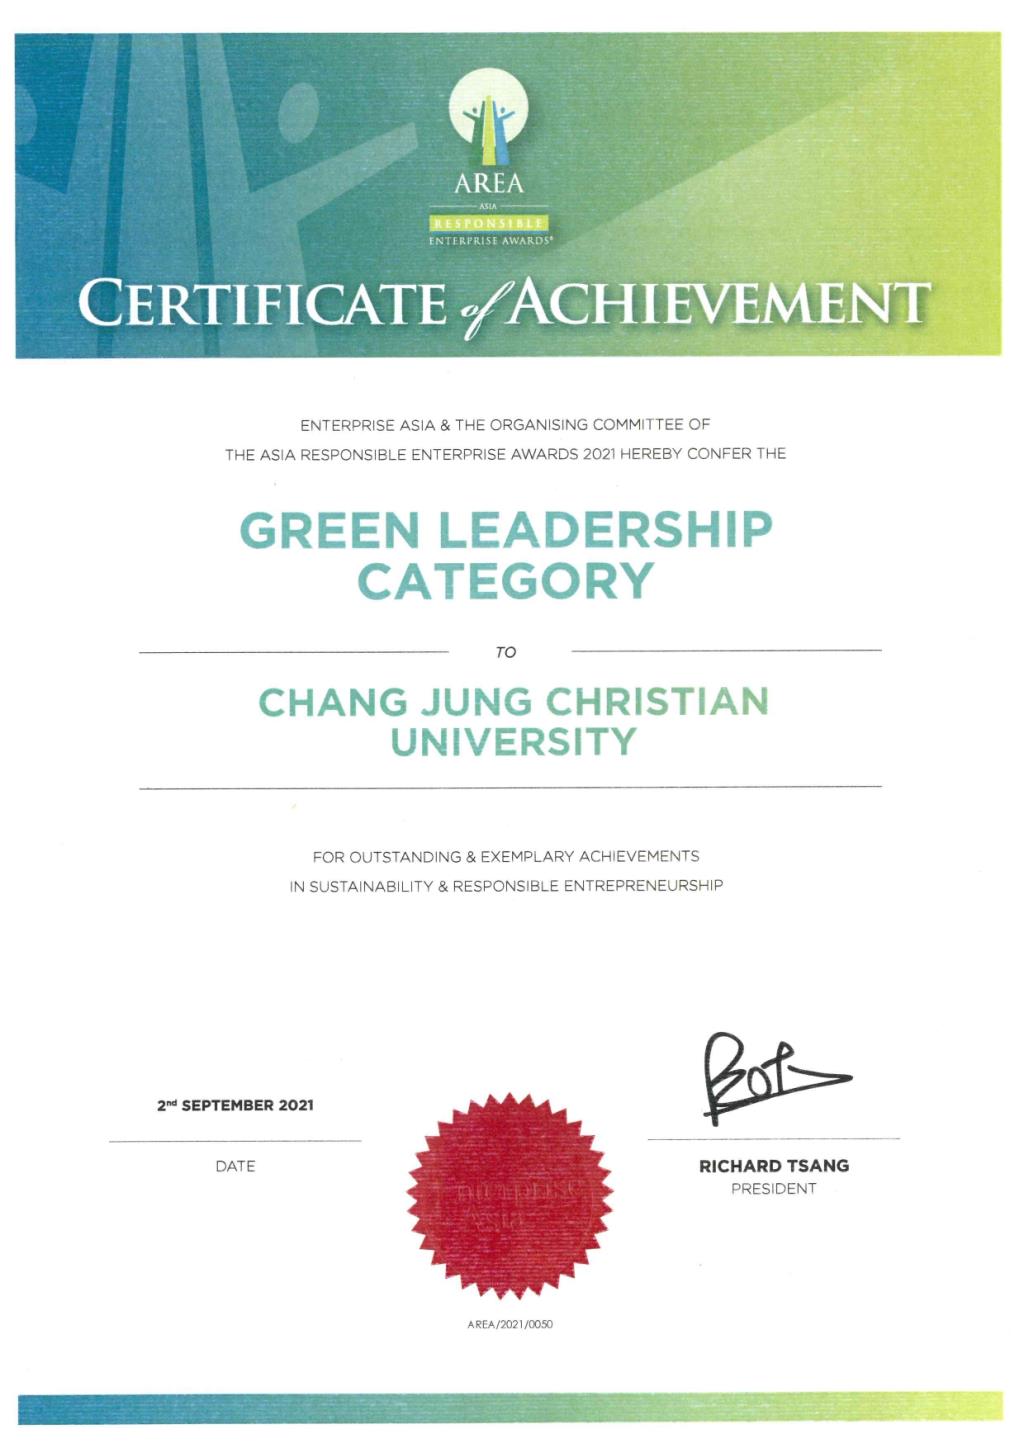 長榮大學勇奪2021AREA綠色領導獎 邁向國際綠色永續大學